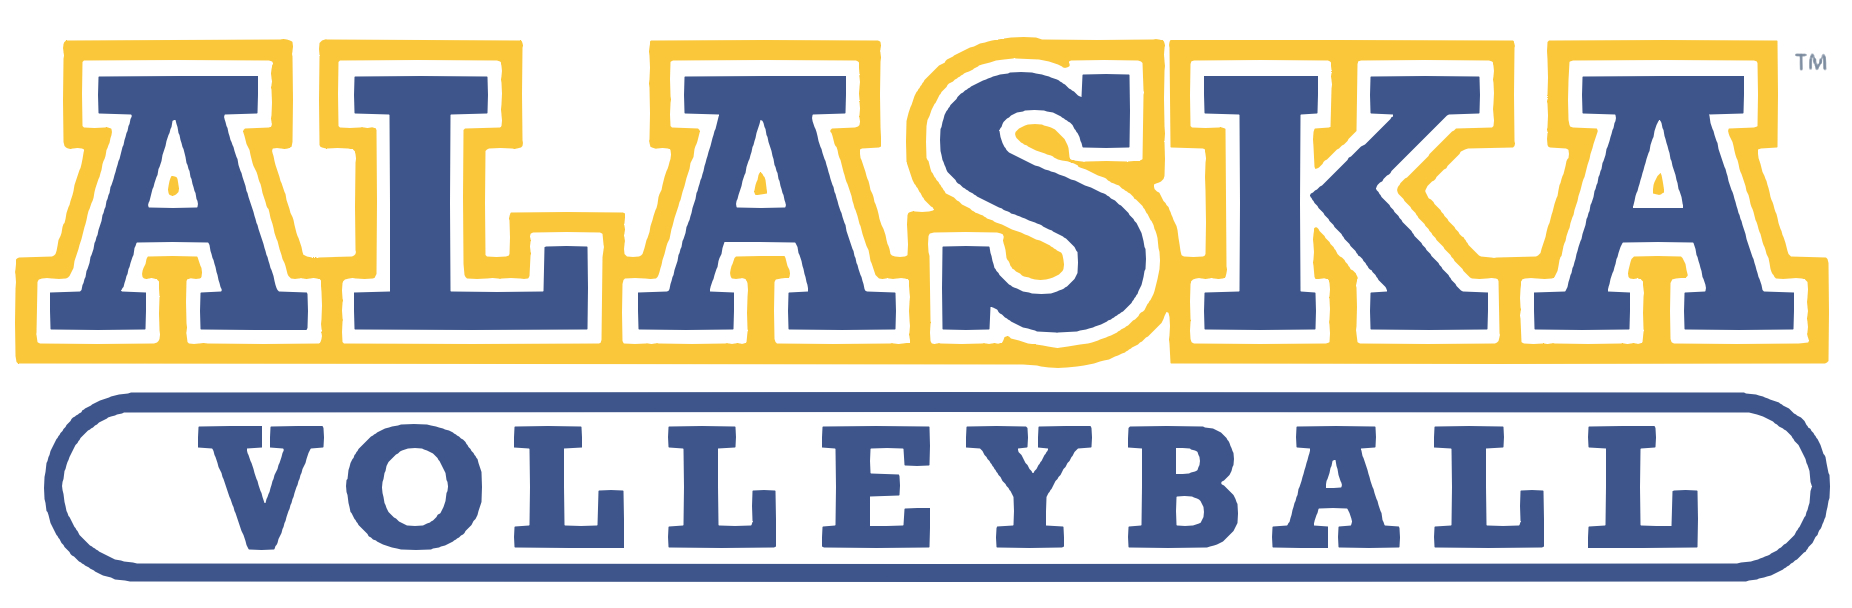 Alaska Volleyball Logo